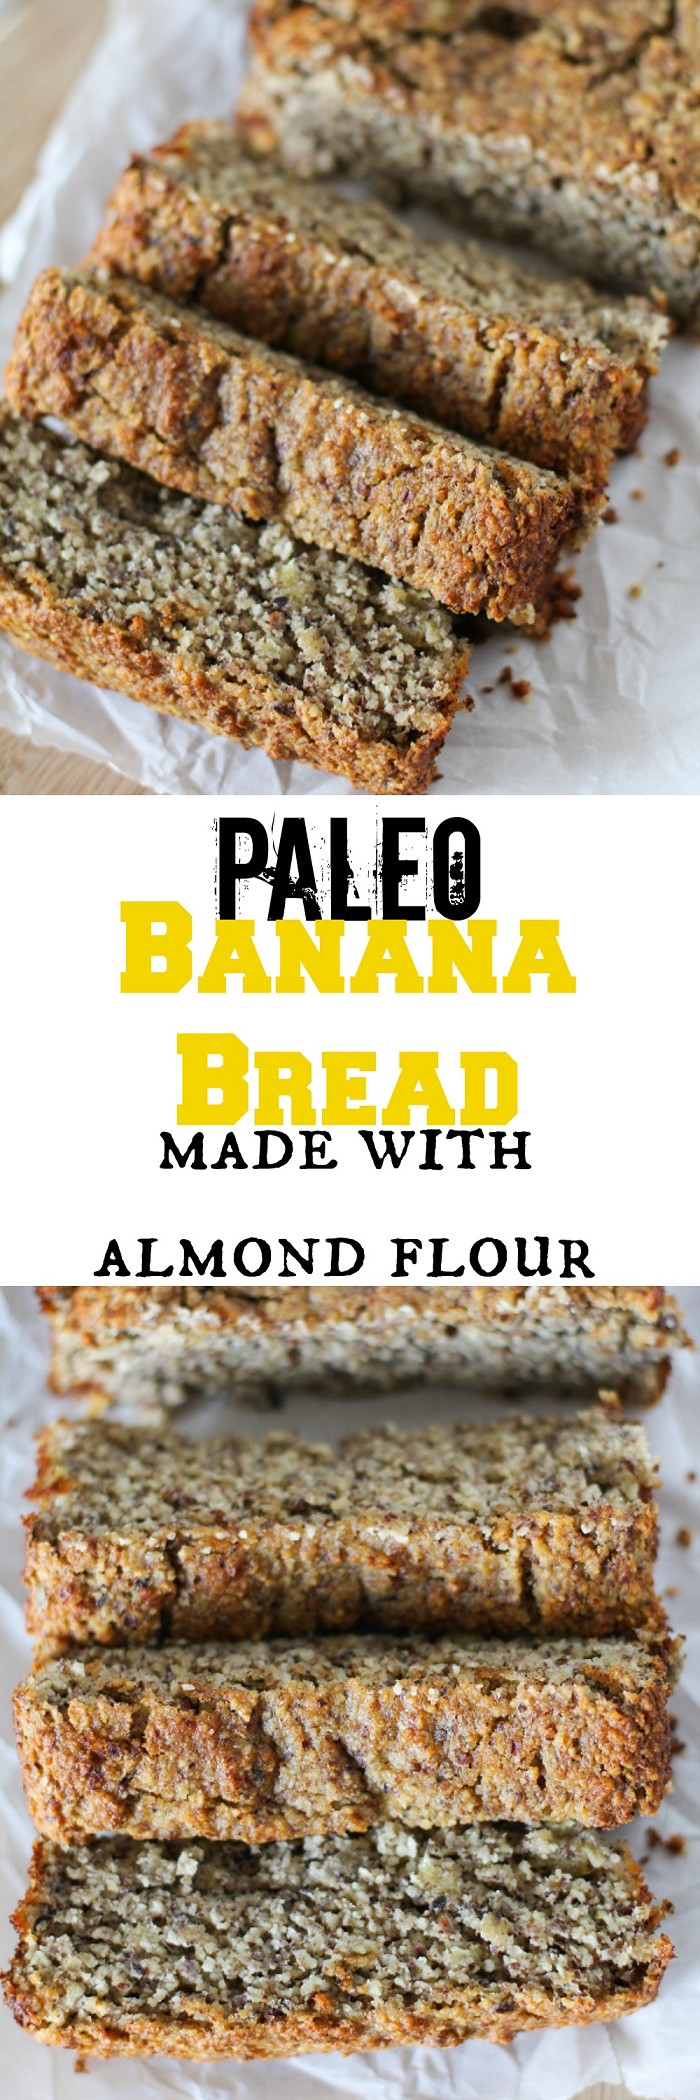 Almond Flour Banana Bread Paleo
 Paleo Banana Bread